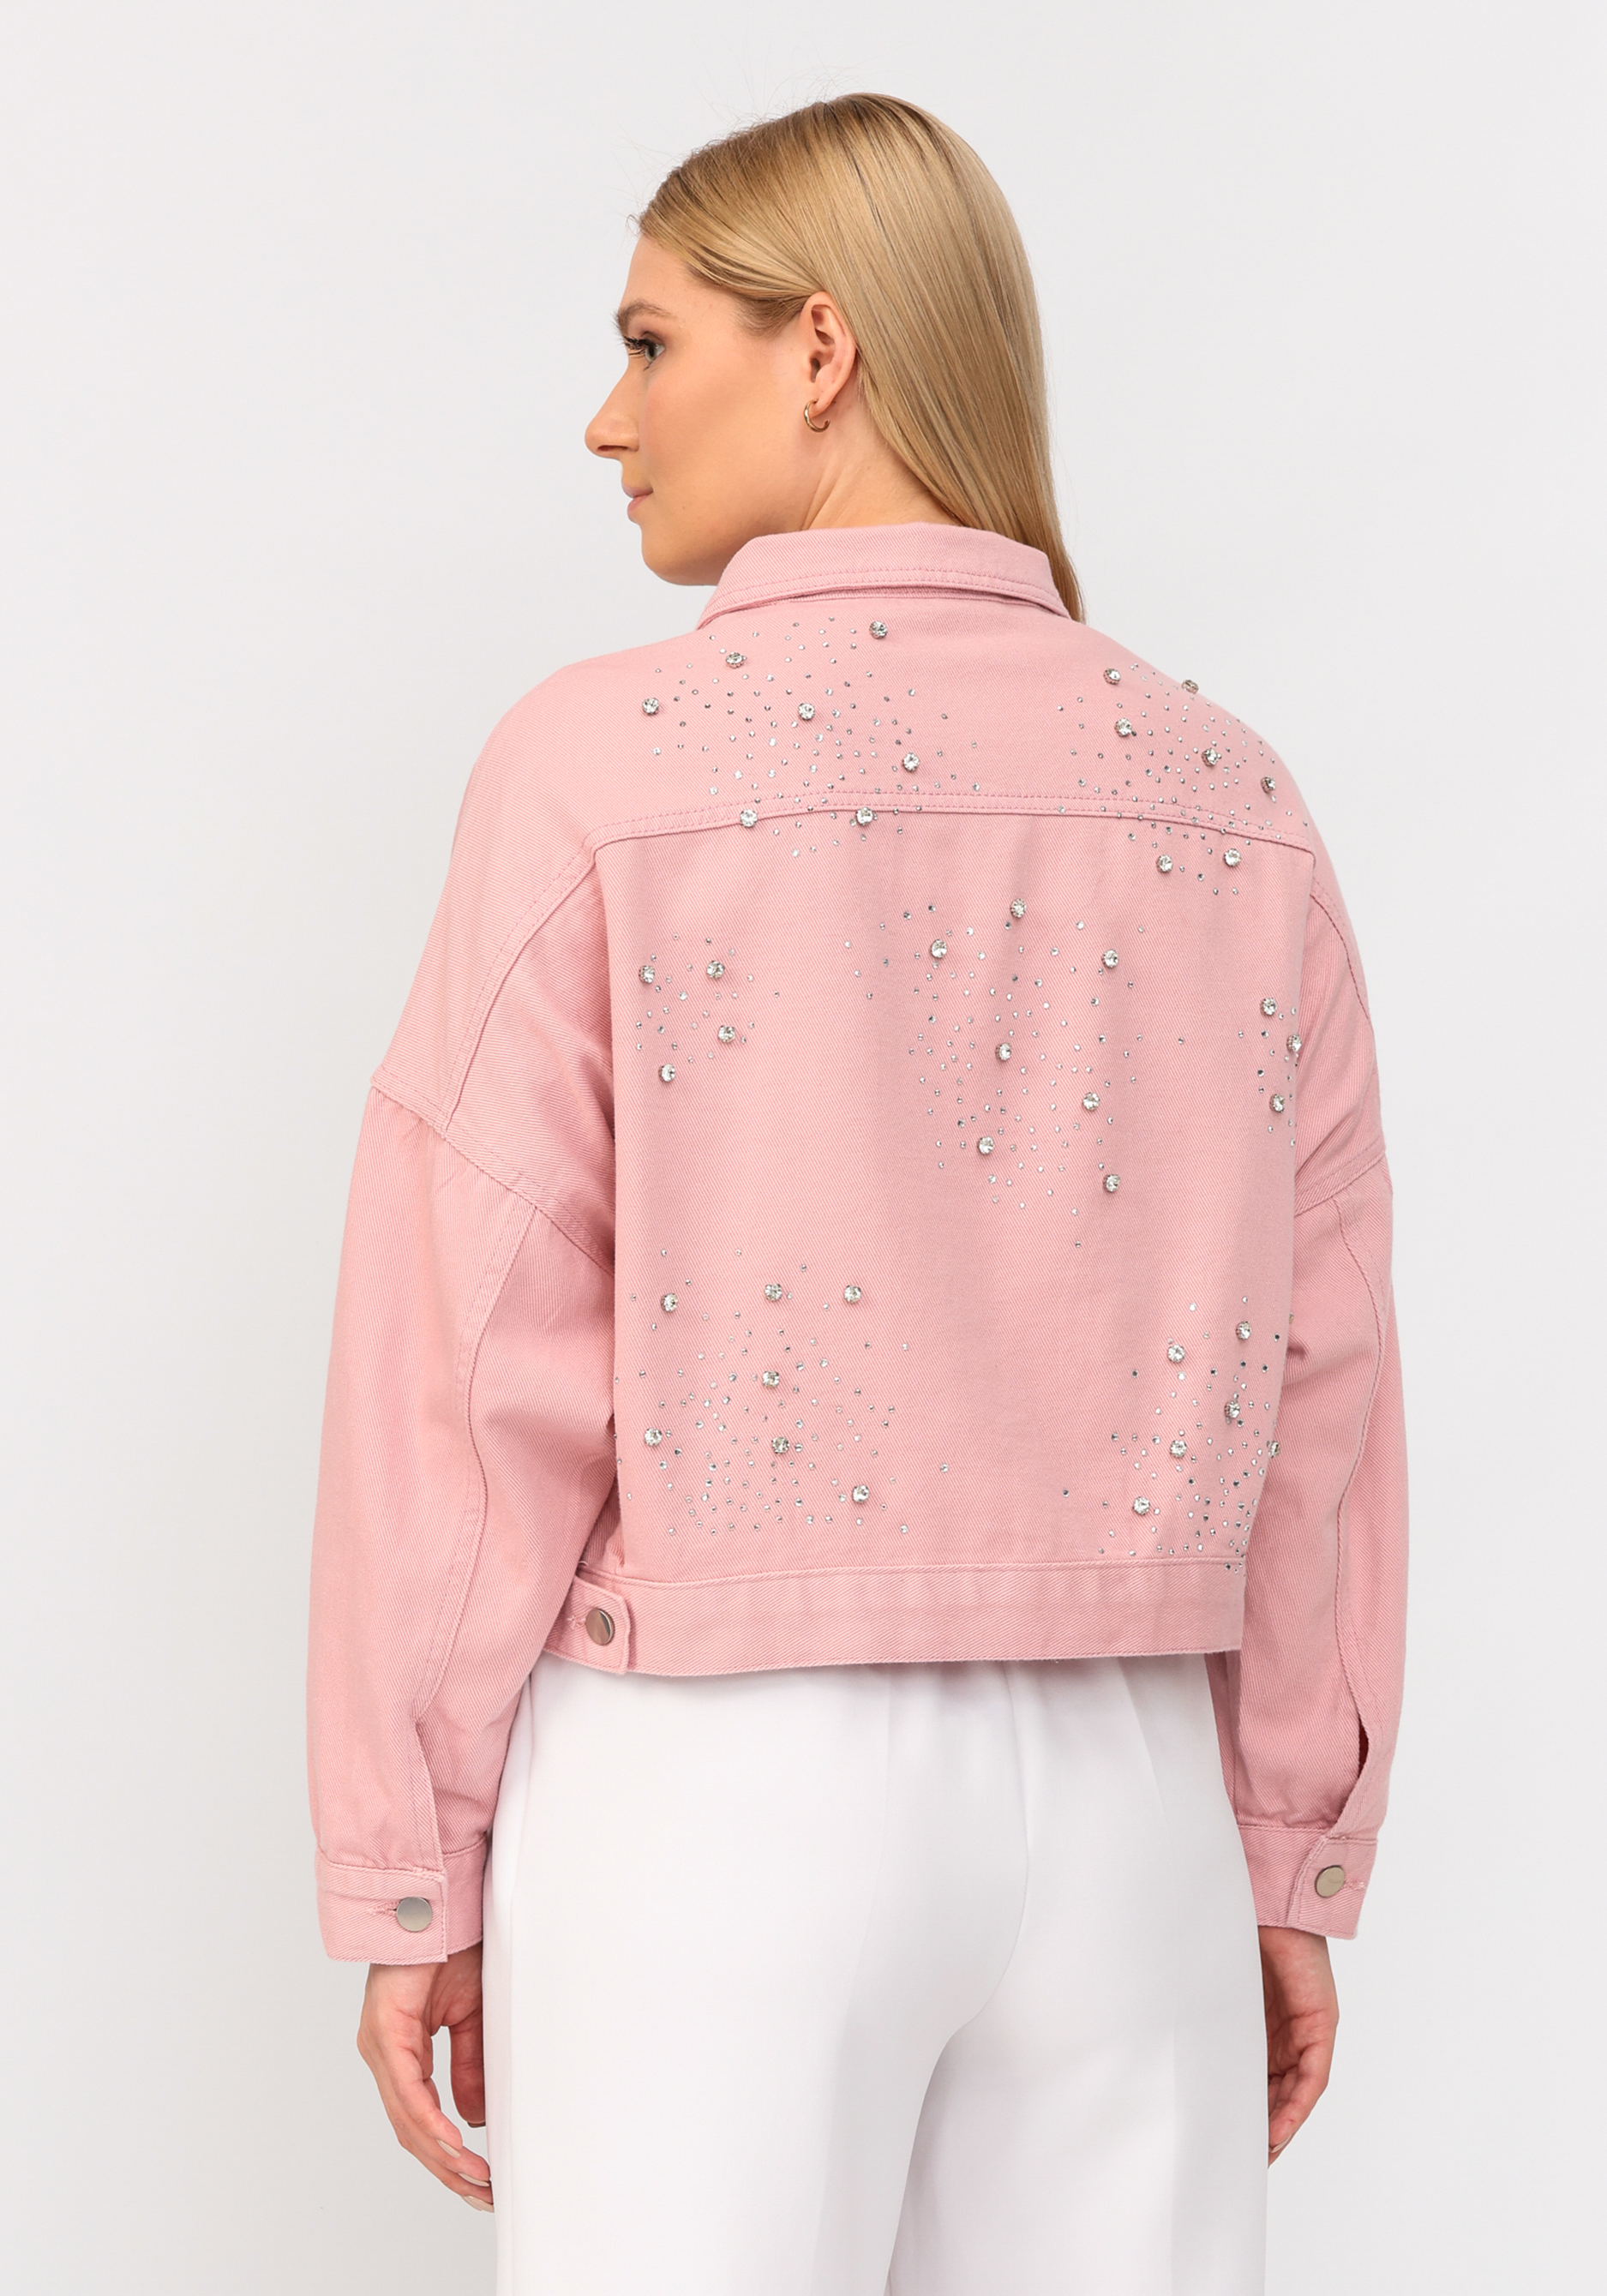 Джинсовая куртка со стразами No name, размер 52-54, цвет розовый - фото 8